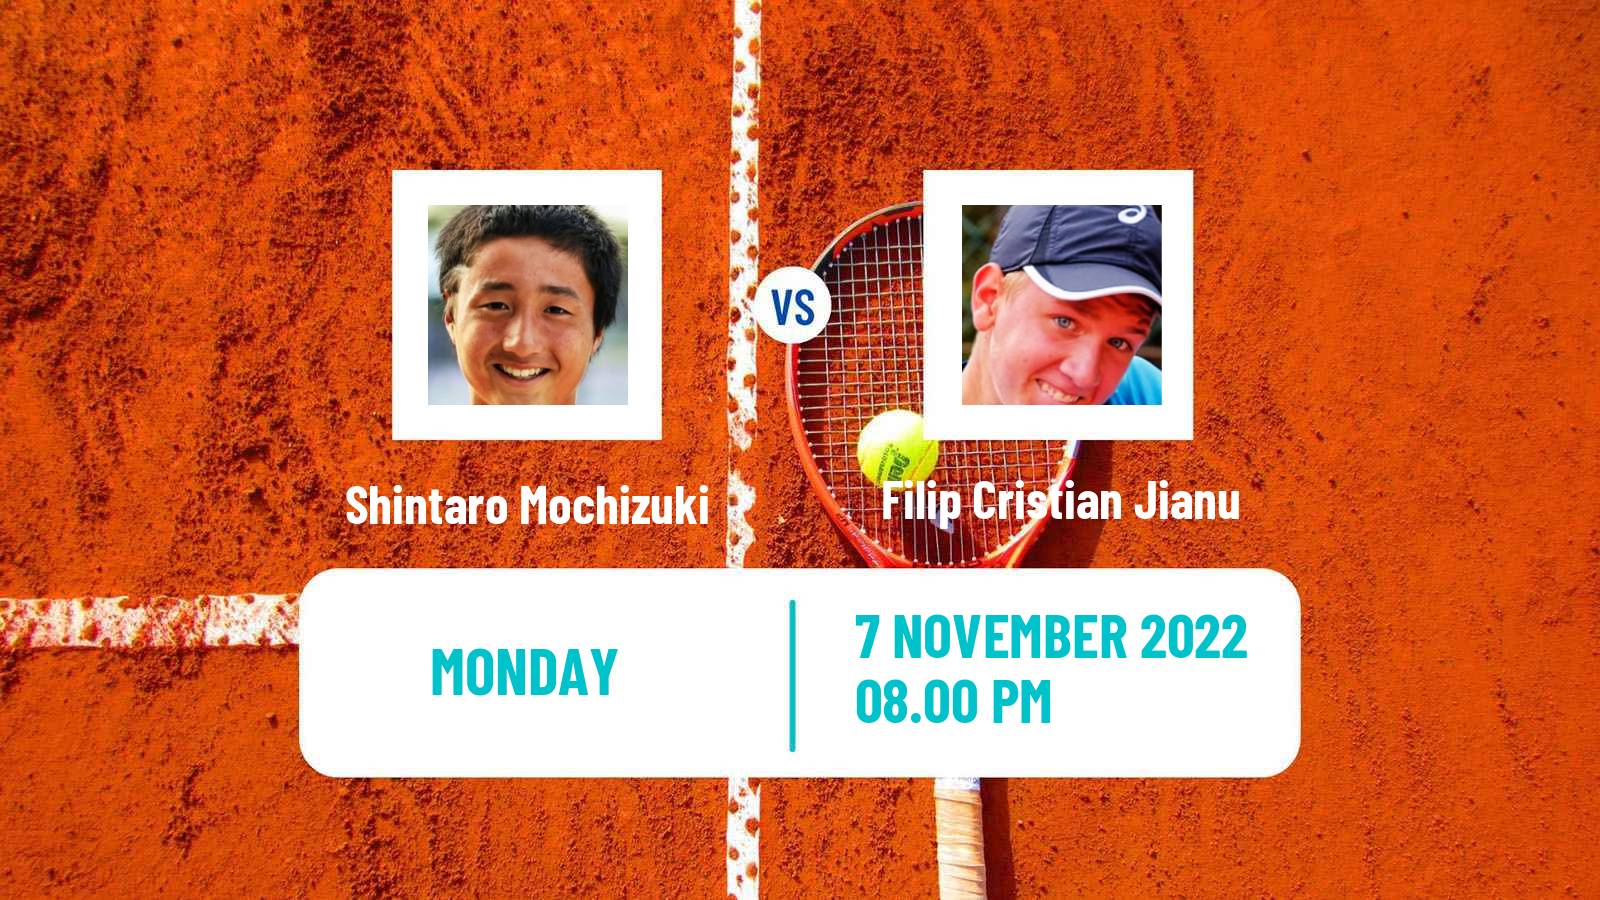 Tennis ATP Challenger Shintaro Mochizuki - Filip Cristian Jianu